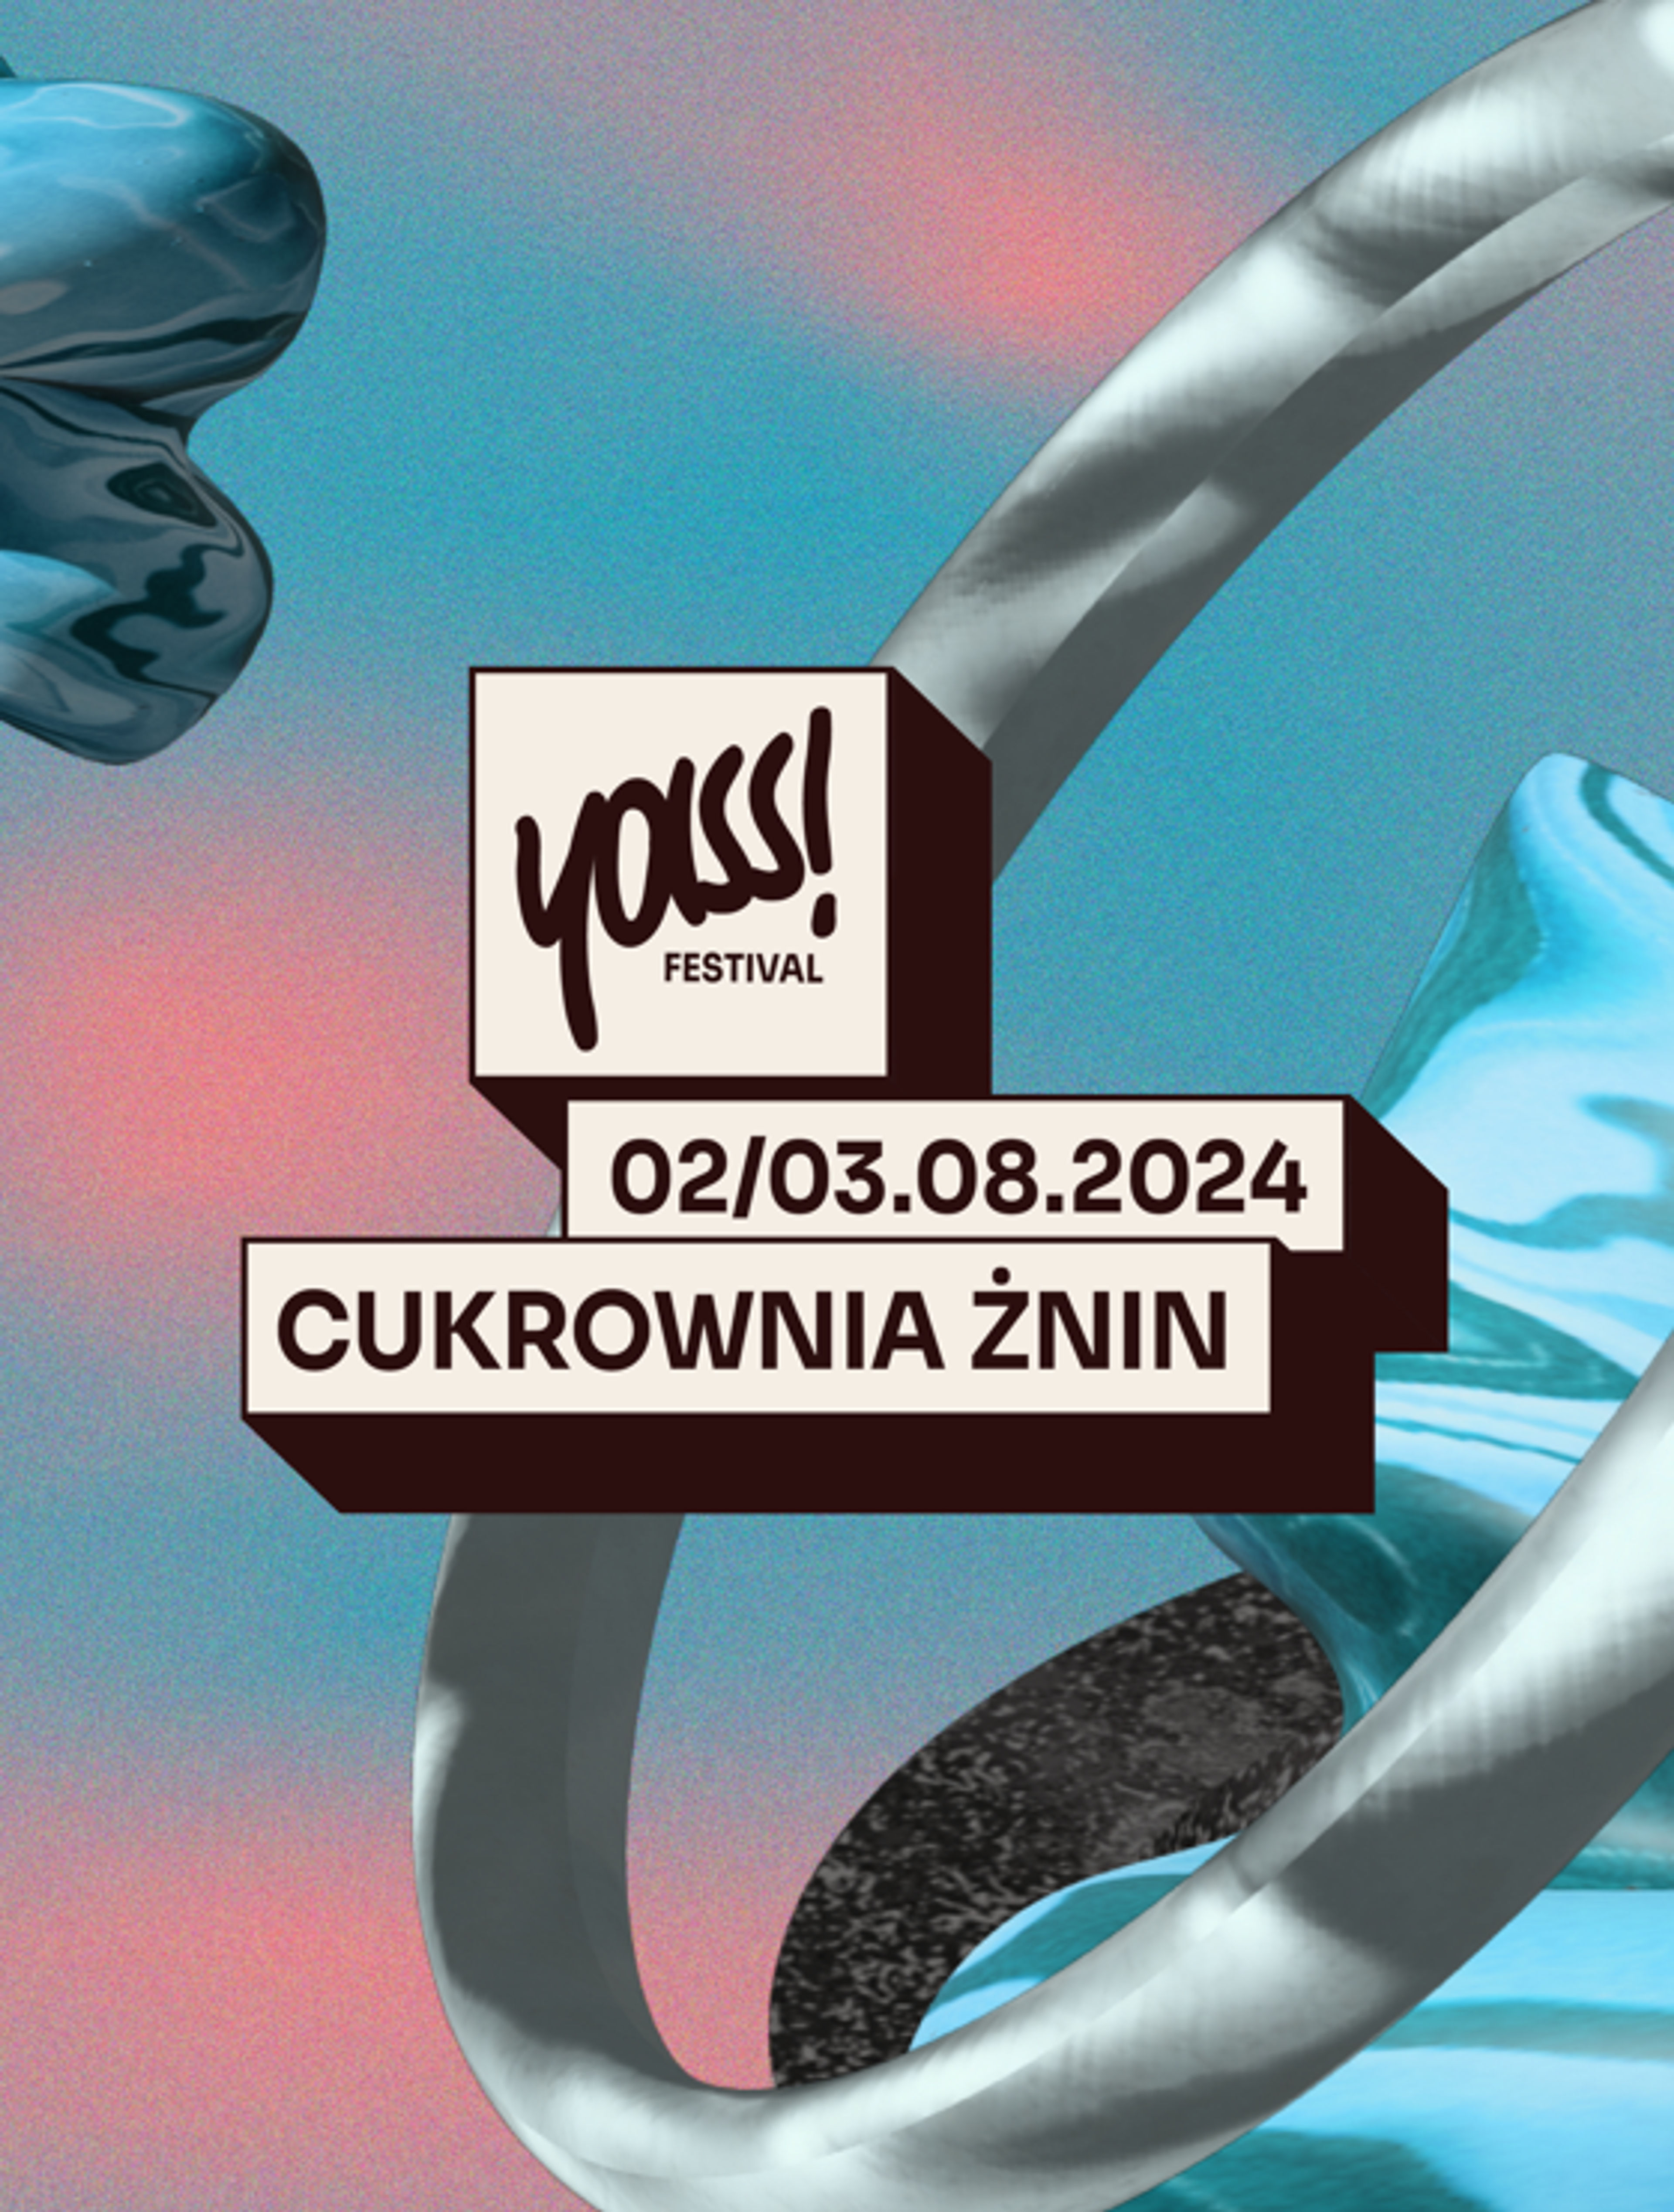 Event poster "YASS! Festival @Cukrownia Żnin"